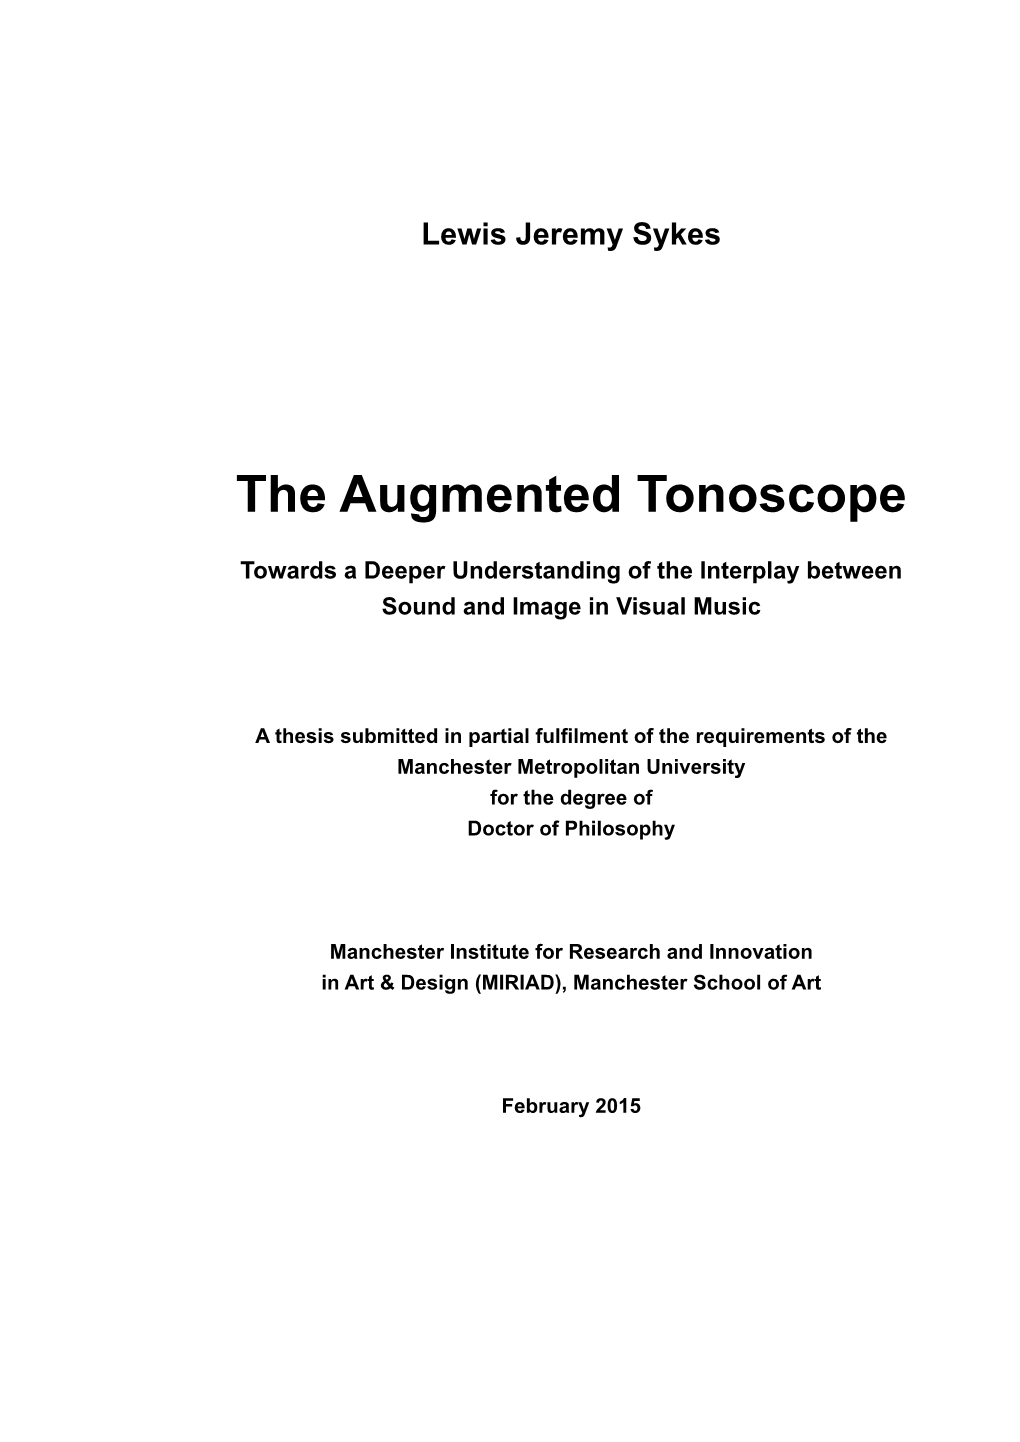 Lewis Jeremy Sykes the Augmented Tonoscope